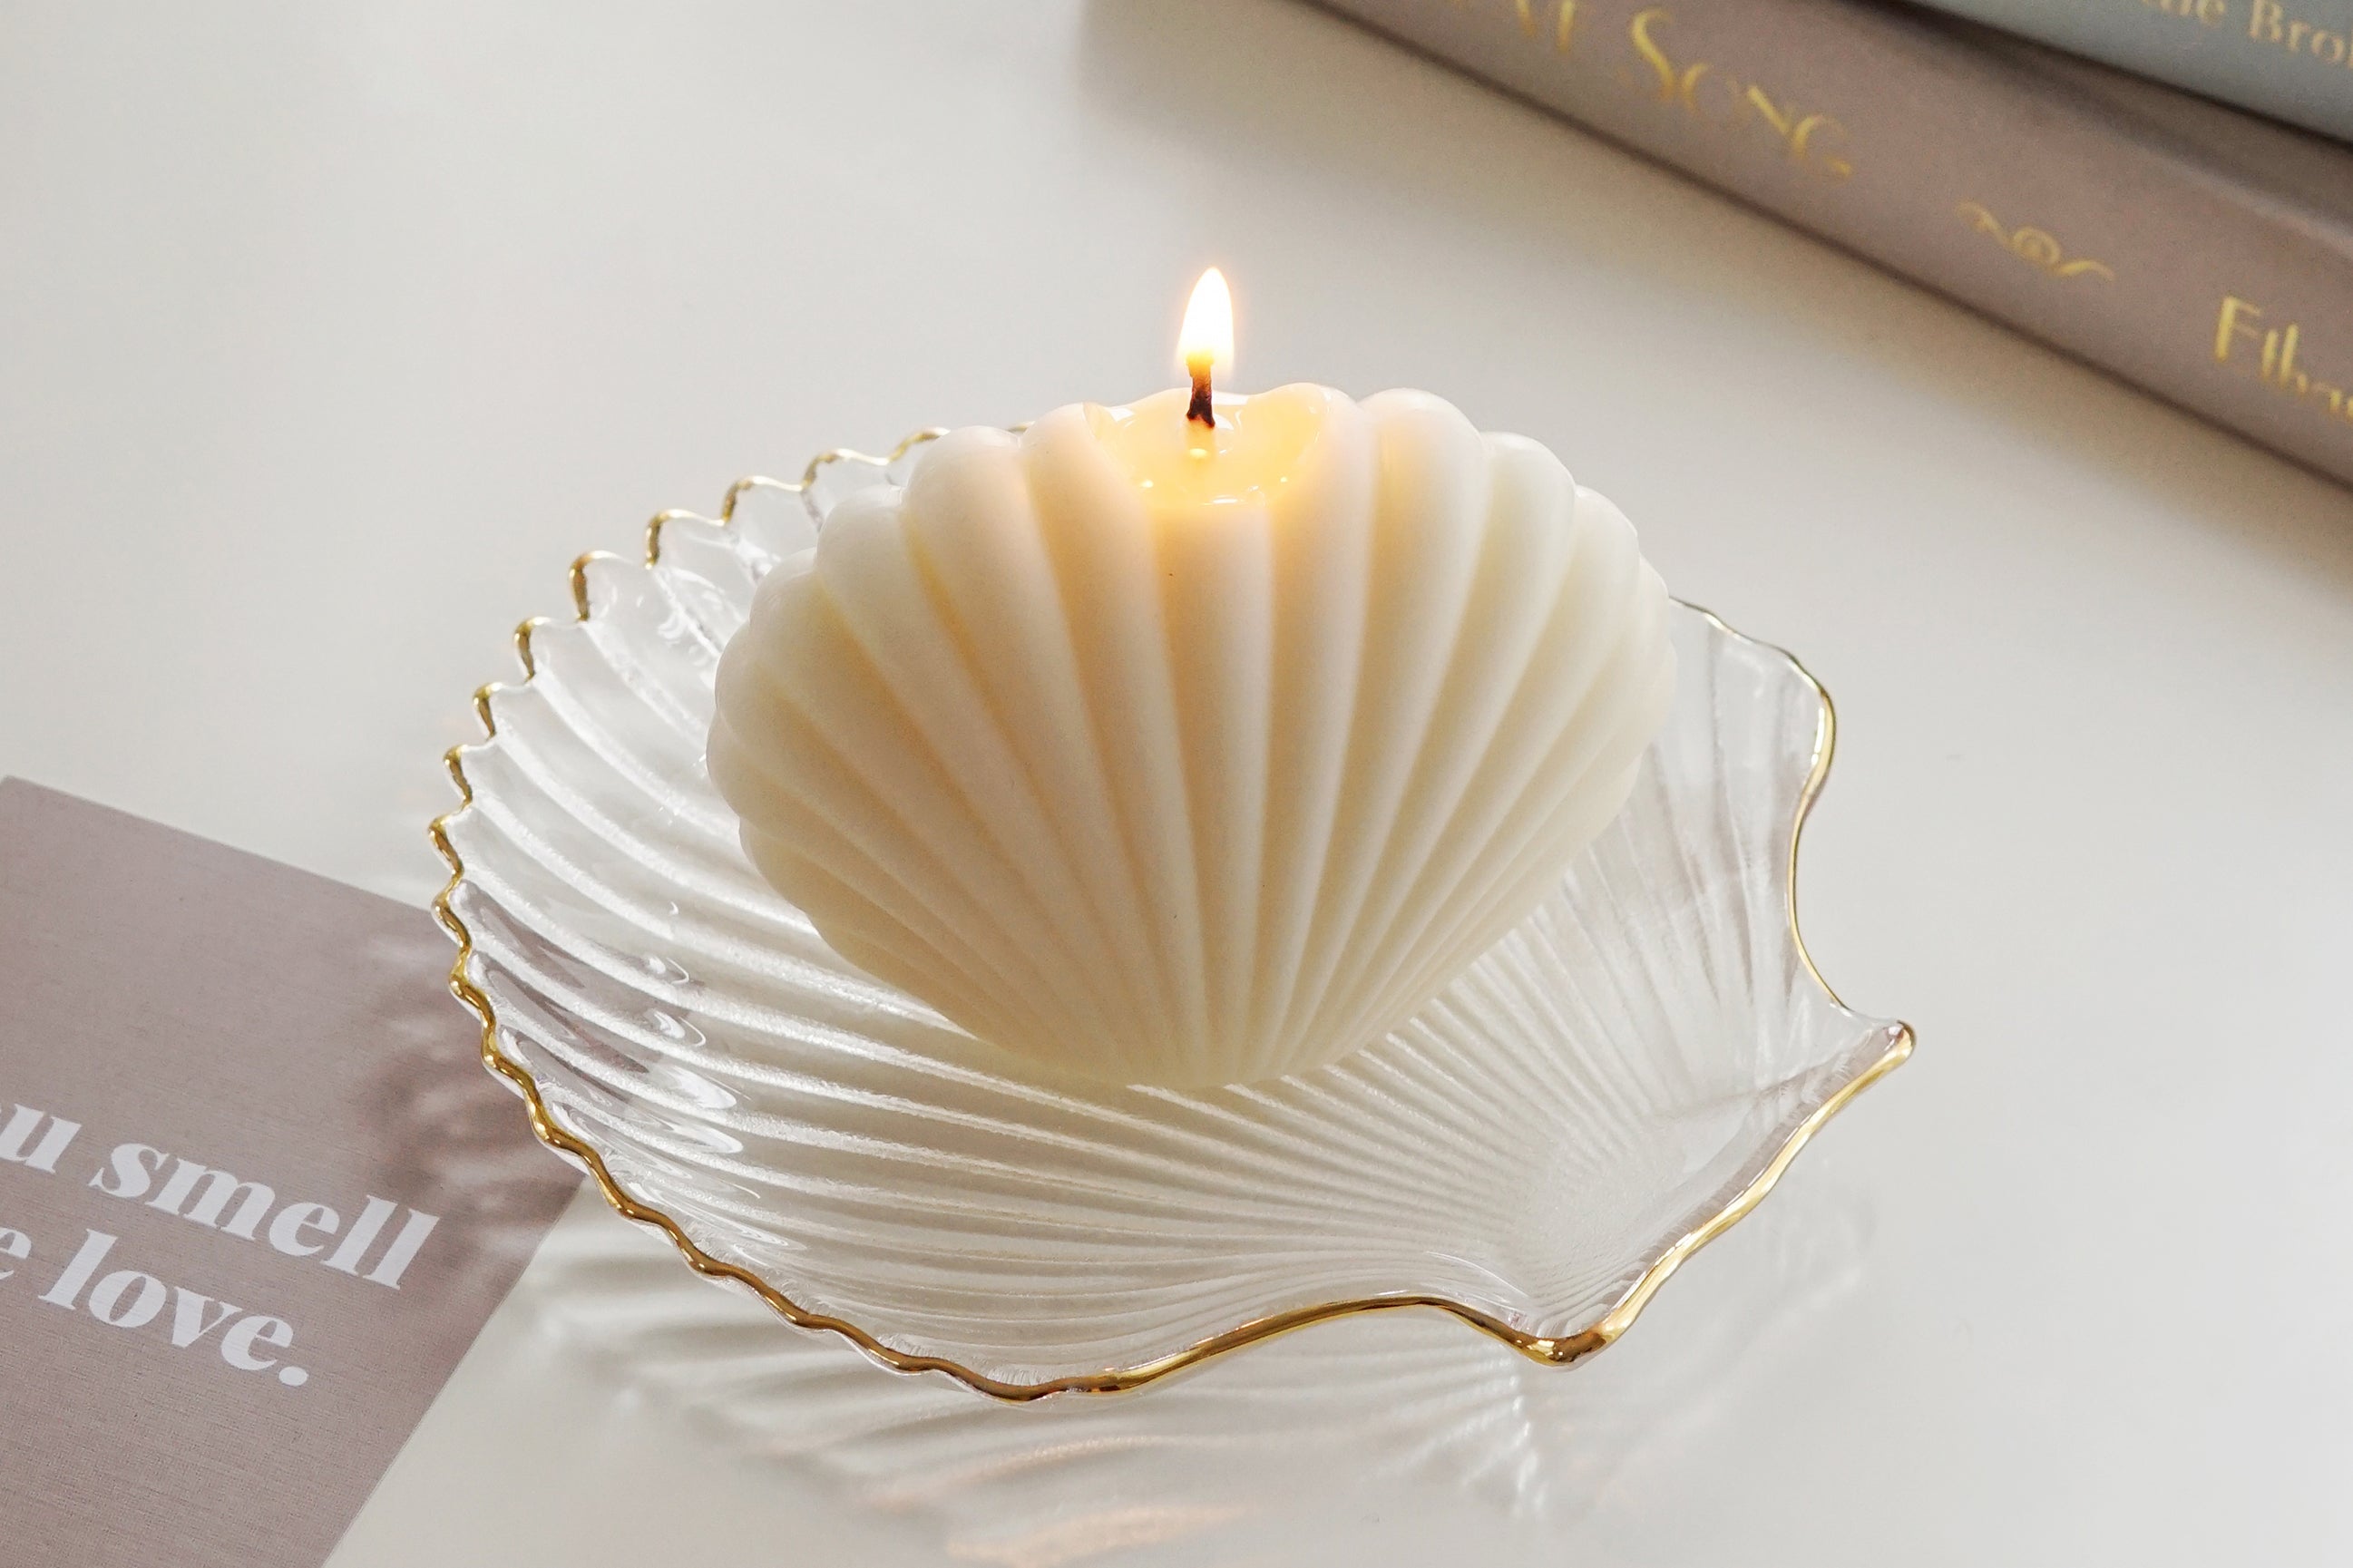 Una vela de pilar de soja encendida en una bandeja de concha transparente